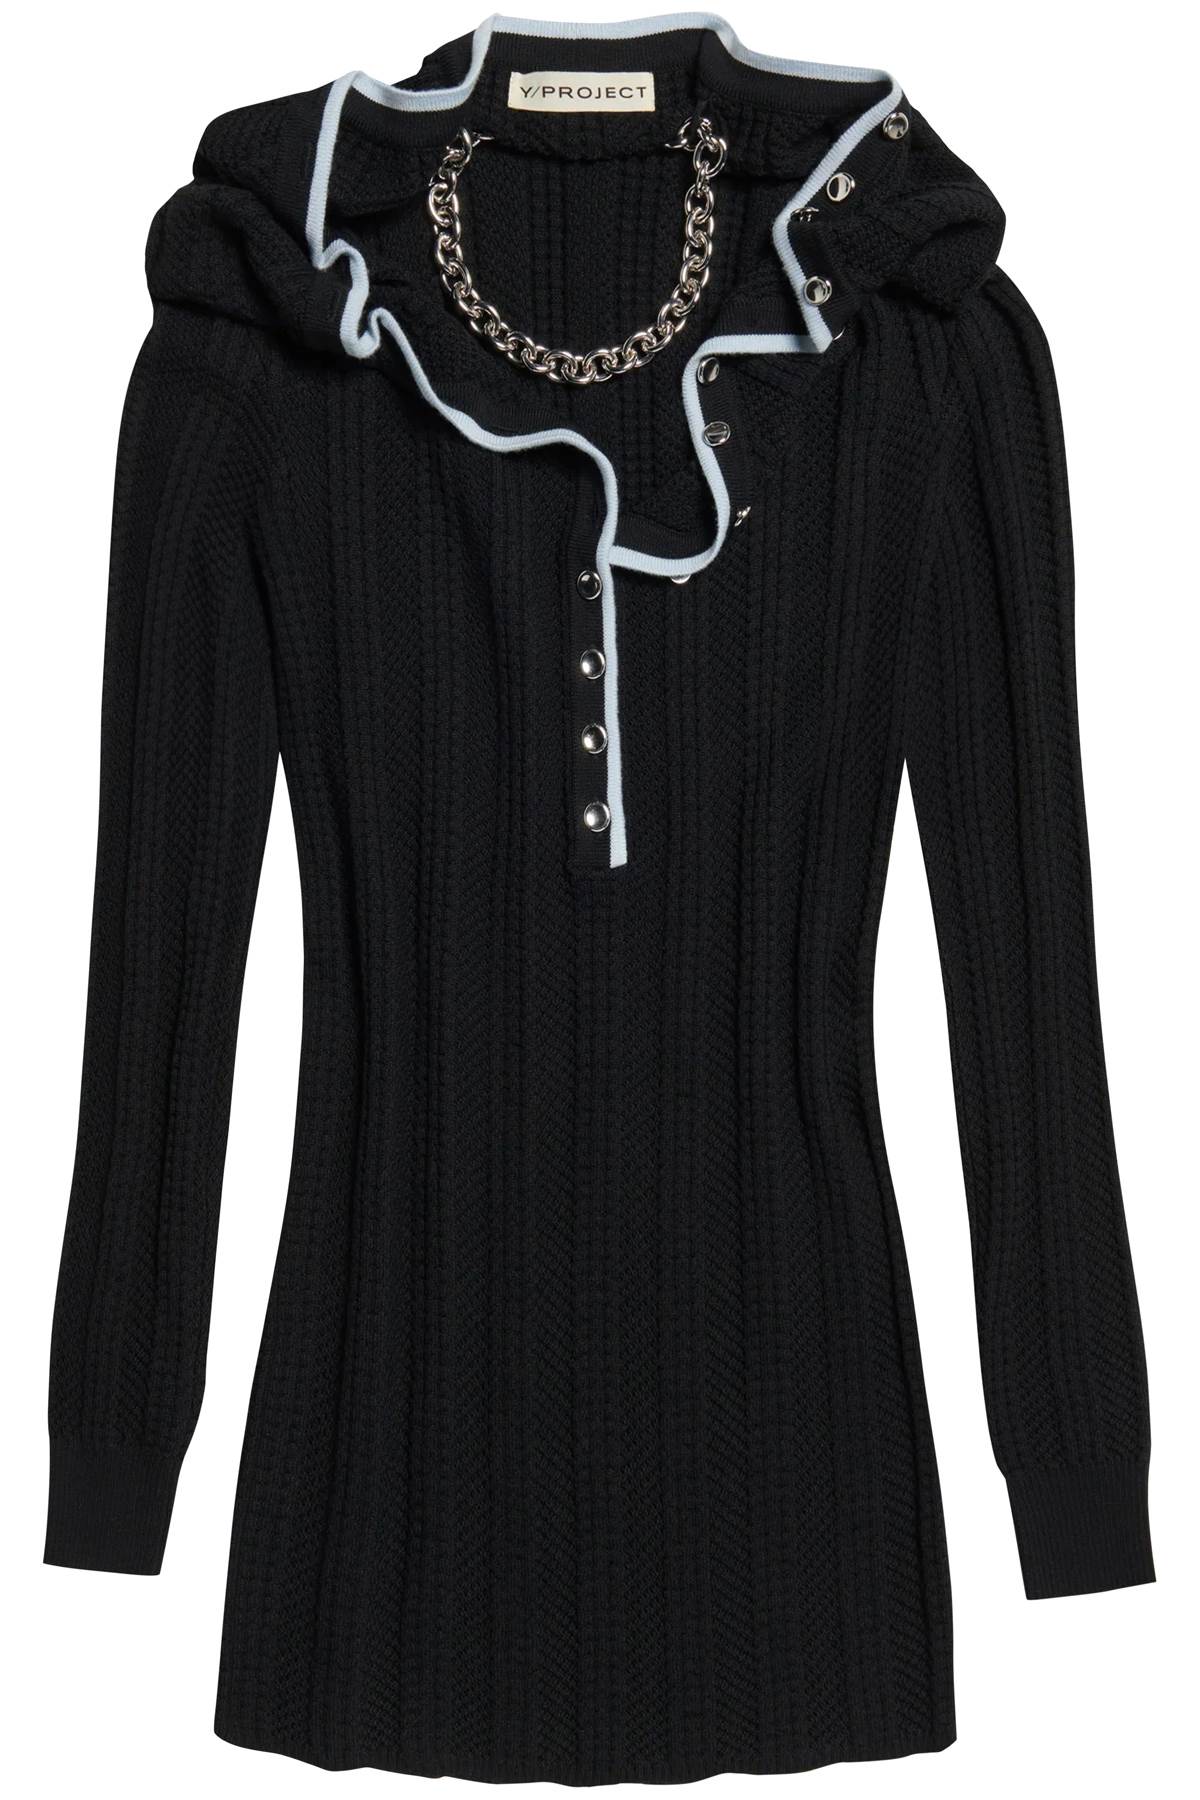 時尚黑色羊毛洋裝，帶蕾絲領口和鏈子項鍊設計，適合女性